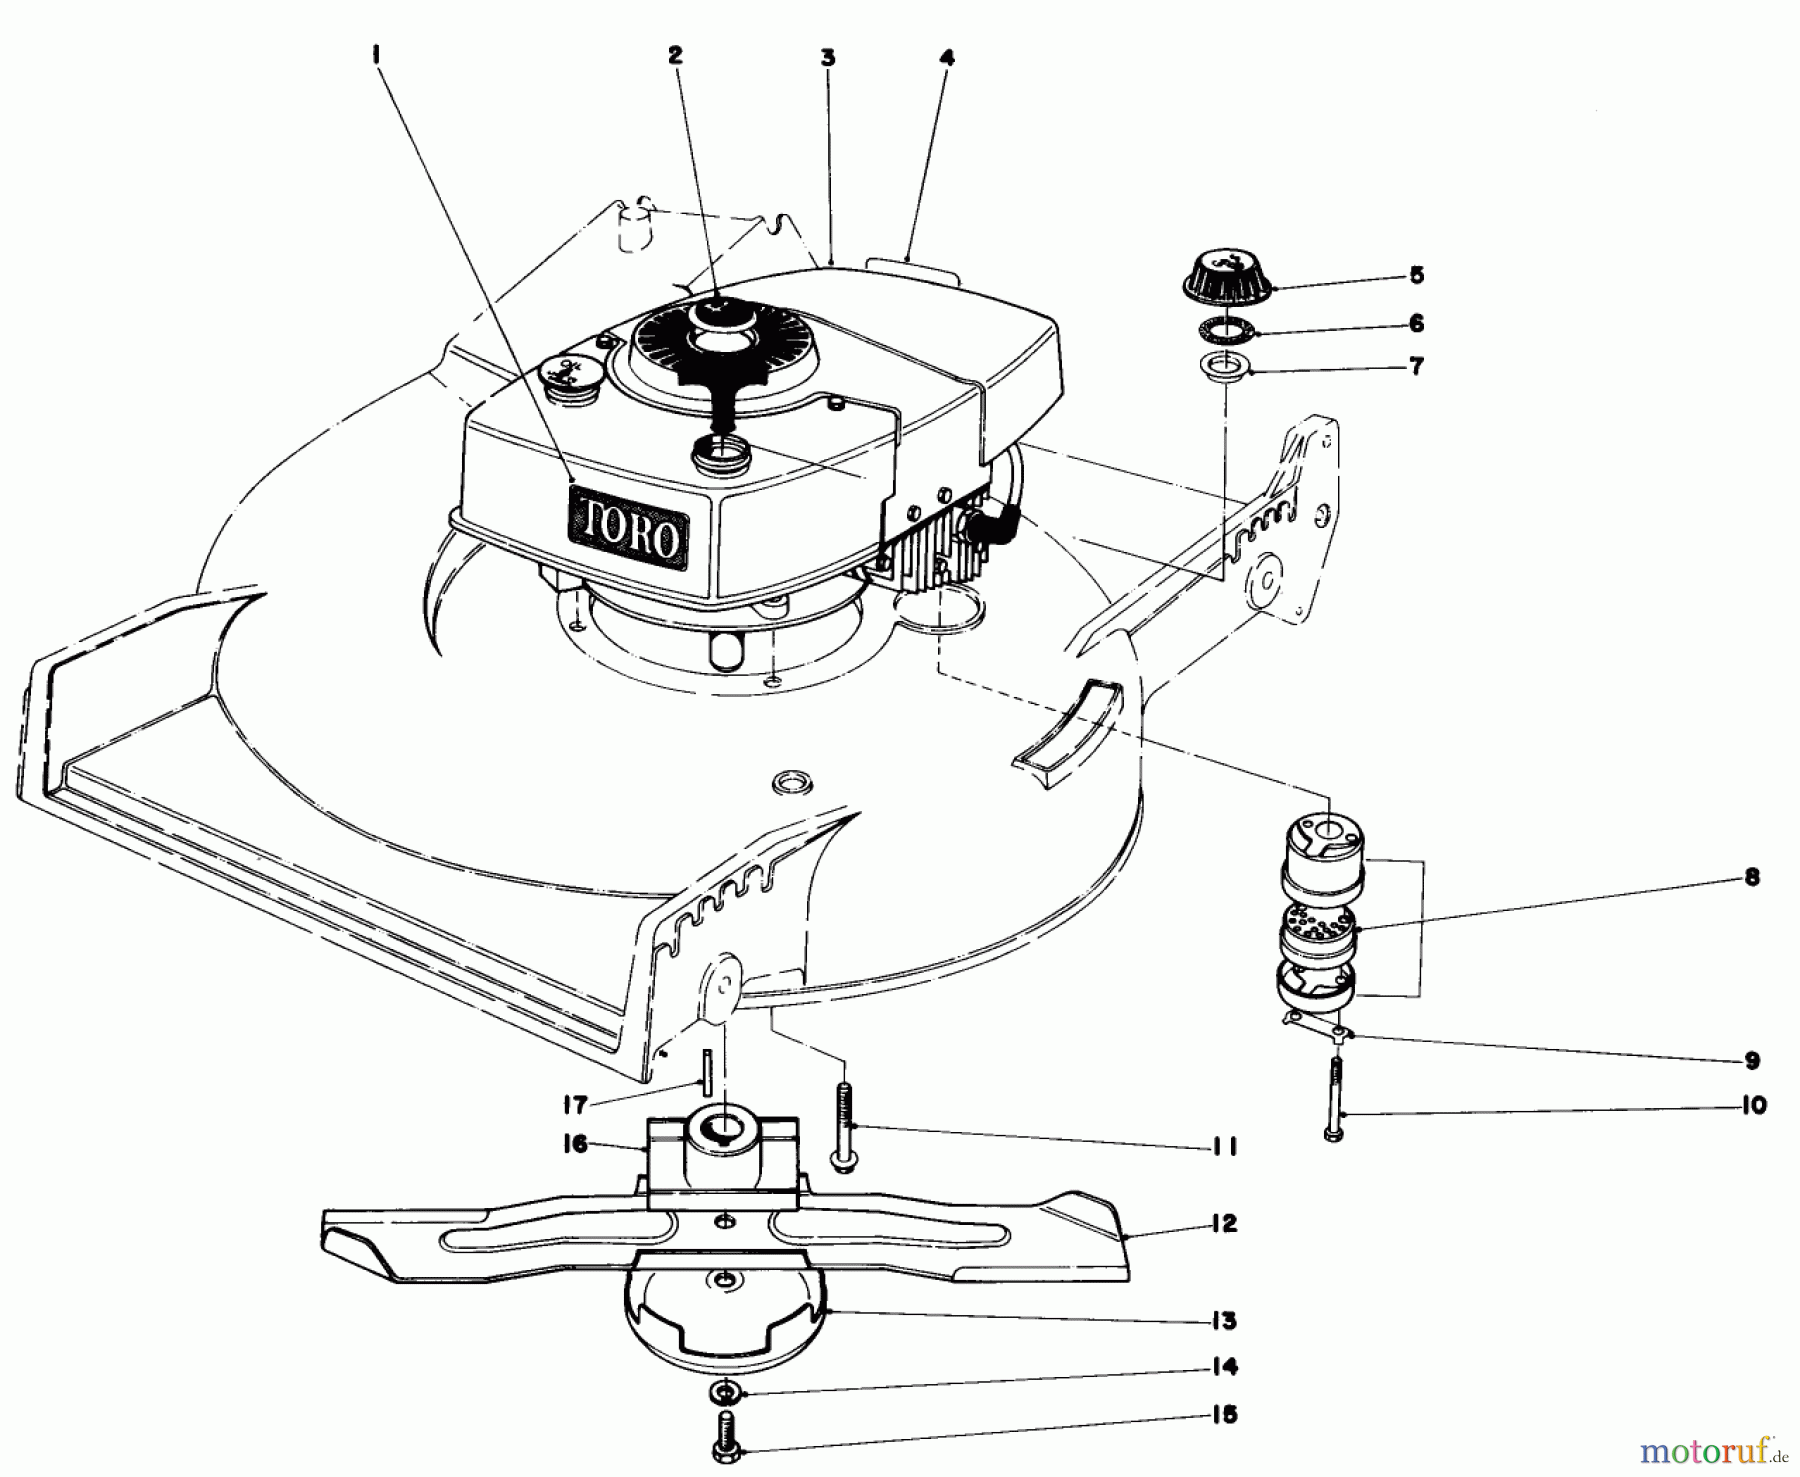  Toro Neu Mowers, Walk-Behind Seite 1 20700 - Toro Lawnmower, 1982 (2000001-2999999) ENGINE ASSEMBLY